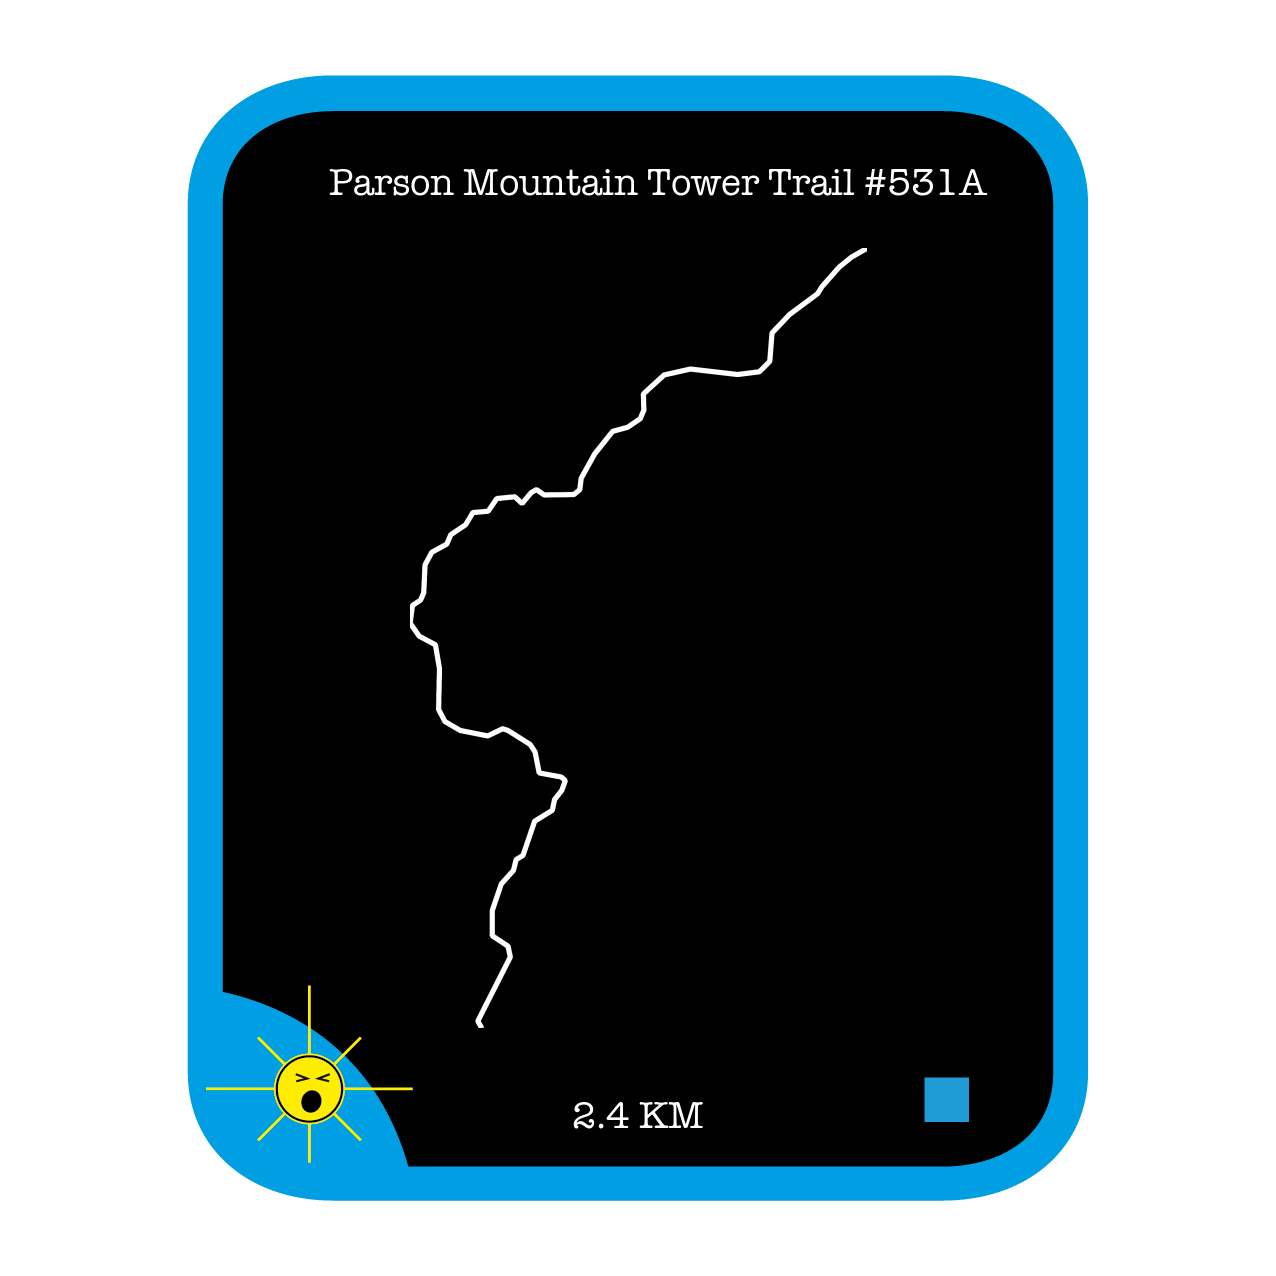 Parson Mountain Tower Trail #531A